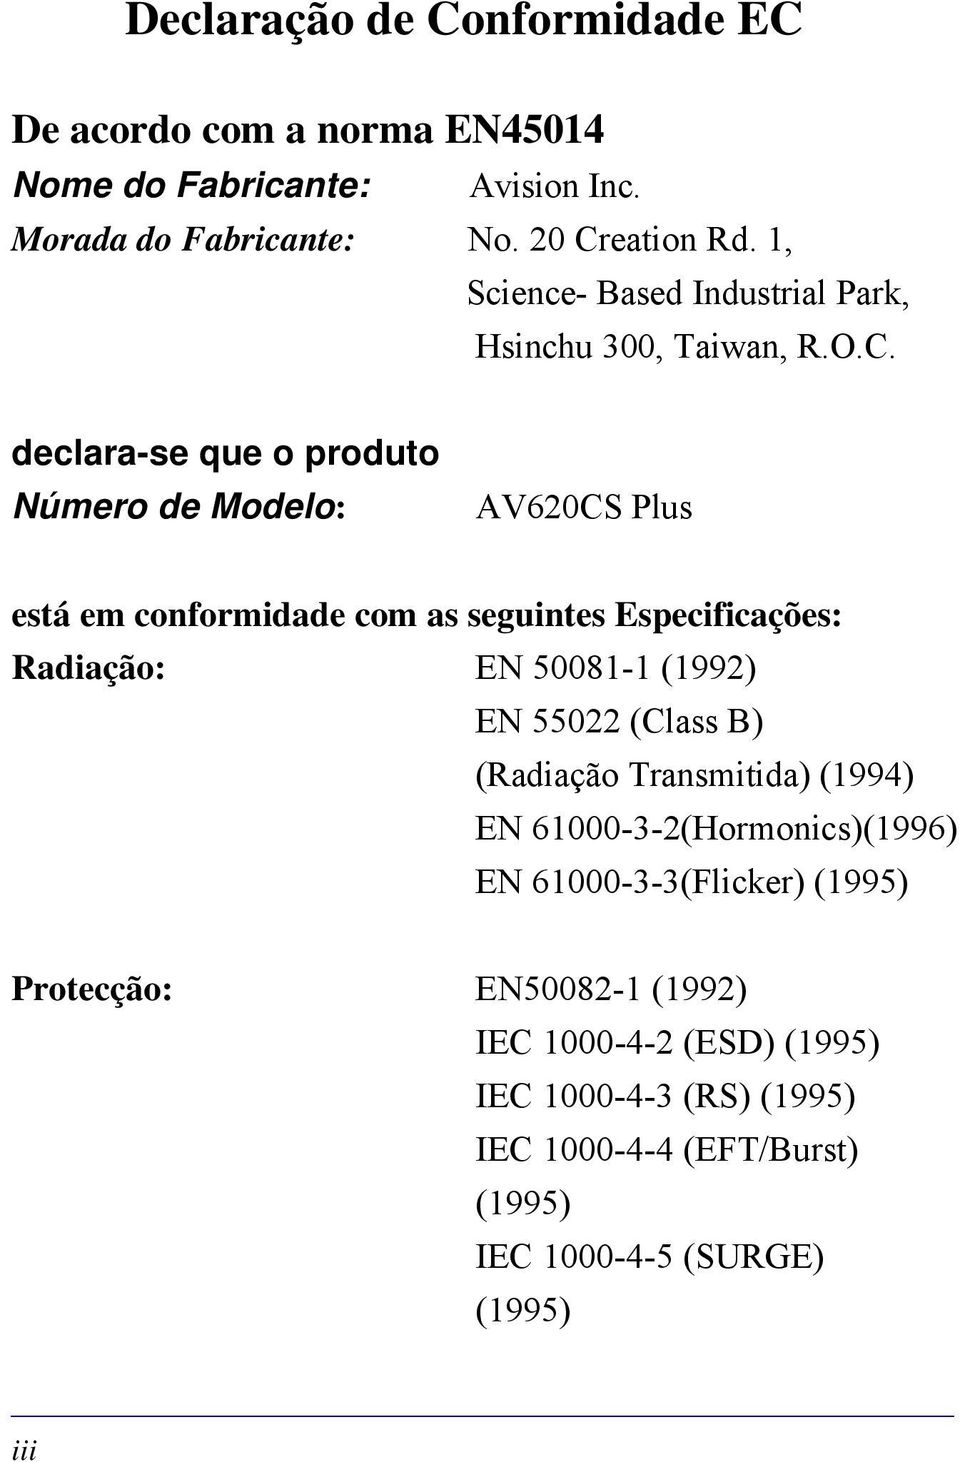 declara-se que o produto Número de Modelo: AV620CS Plus está em conformidade com as seguintes Especificações: Radiação: EN 50081-1 (1992) EN 55022